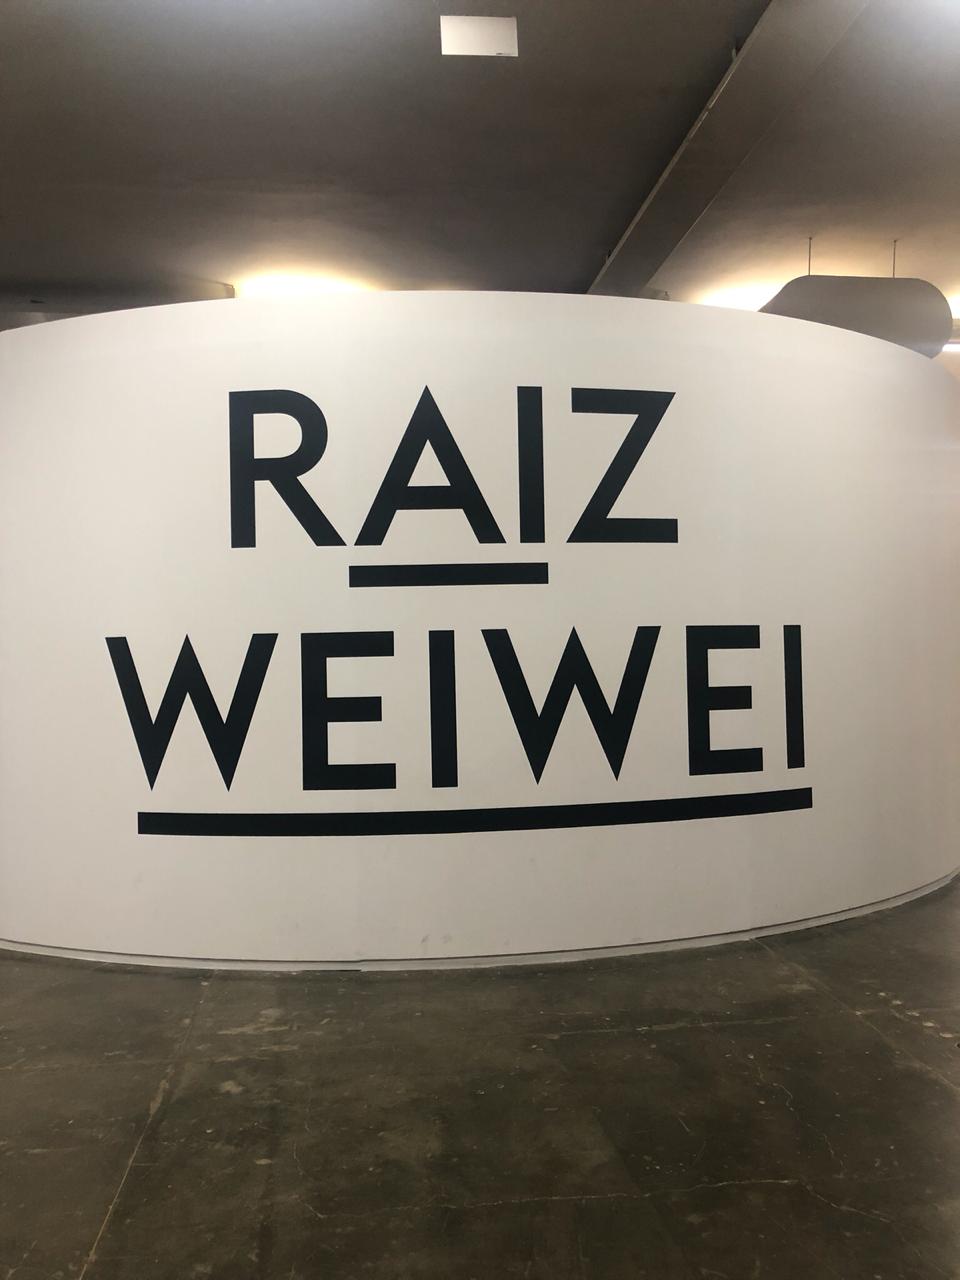 Raiz Weiwei uma Exposição para Refletir sobre Democracia, Política e Arte.